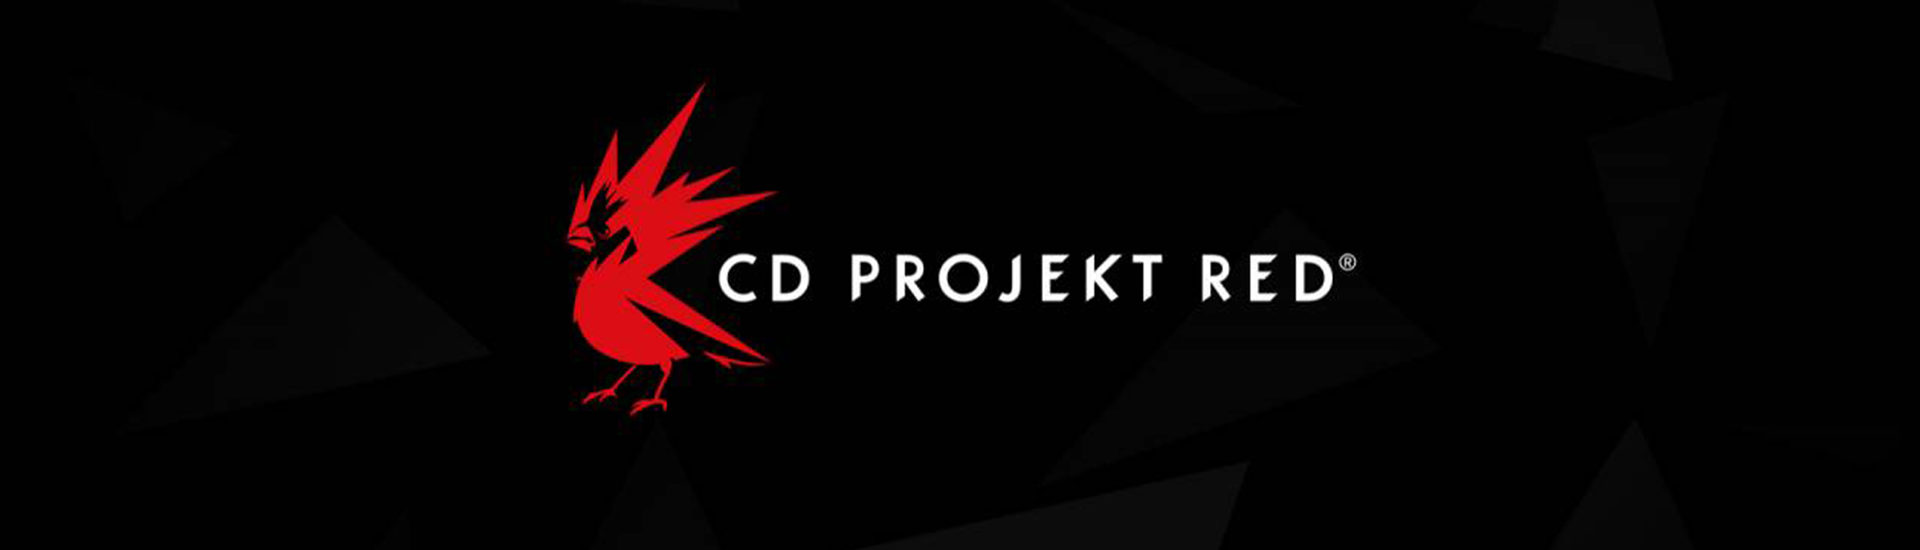 CD Projekt Red kündigt sieben neue Spiele an